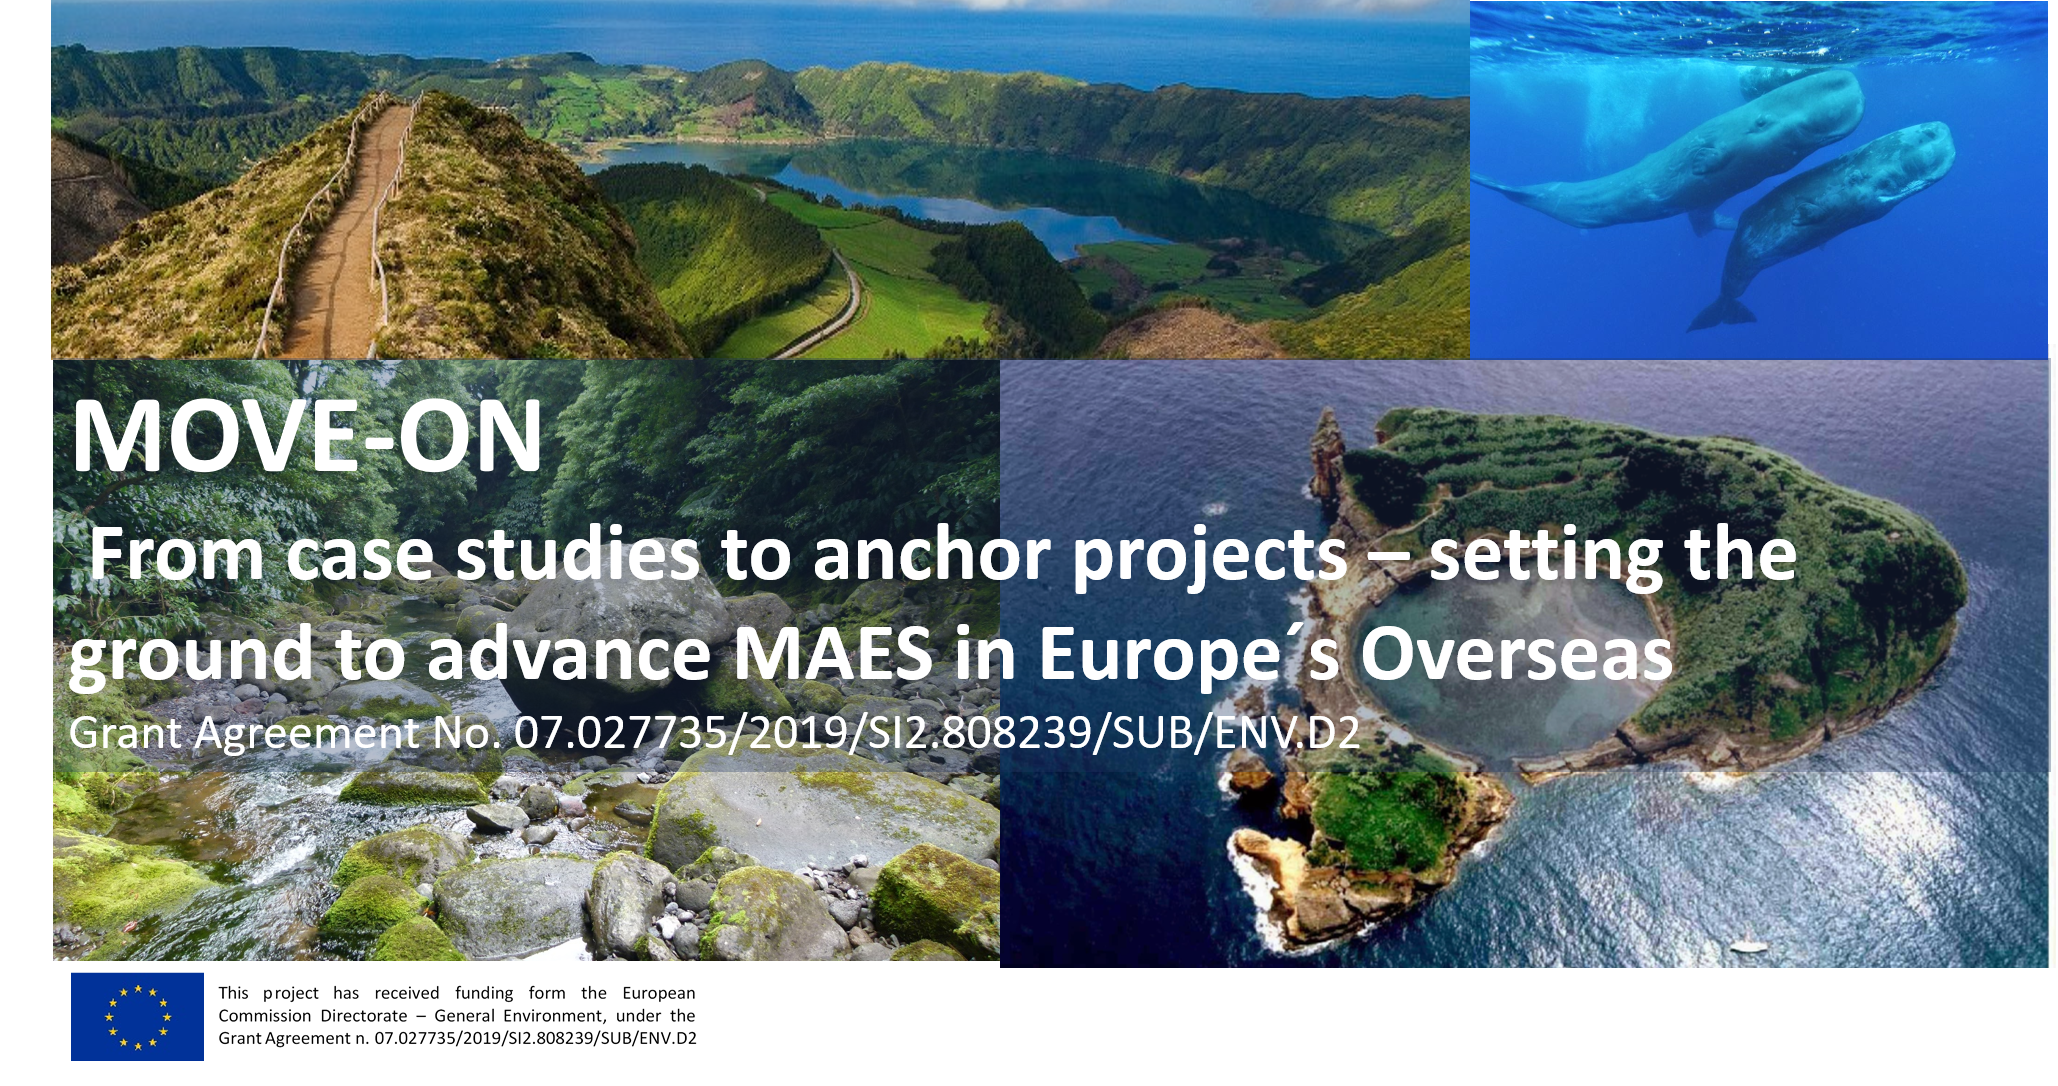 Governo dos Açores coordena projeto de apoio à implementação da Estratégia de Biodiversidade da União Europeia